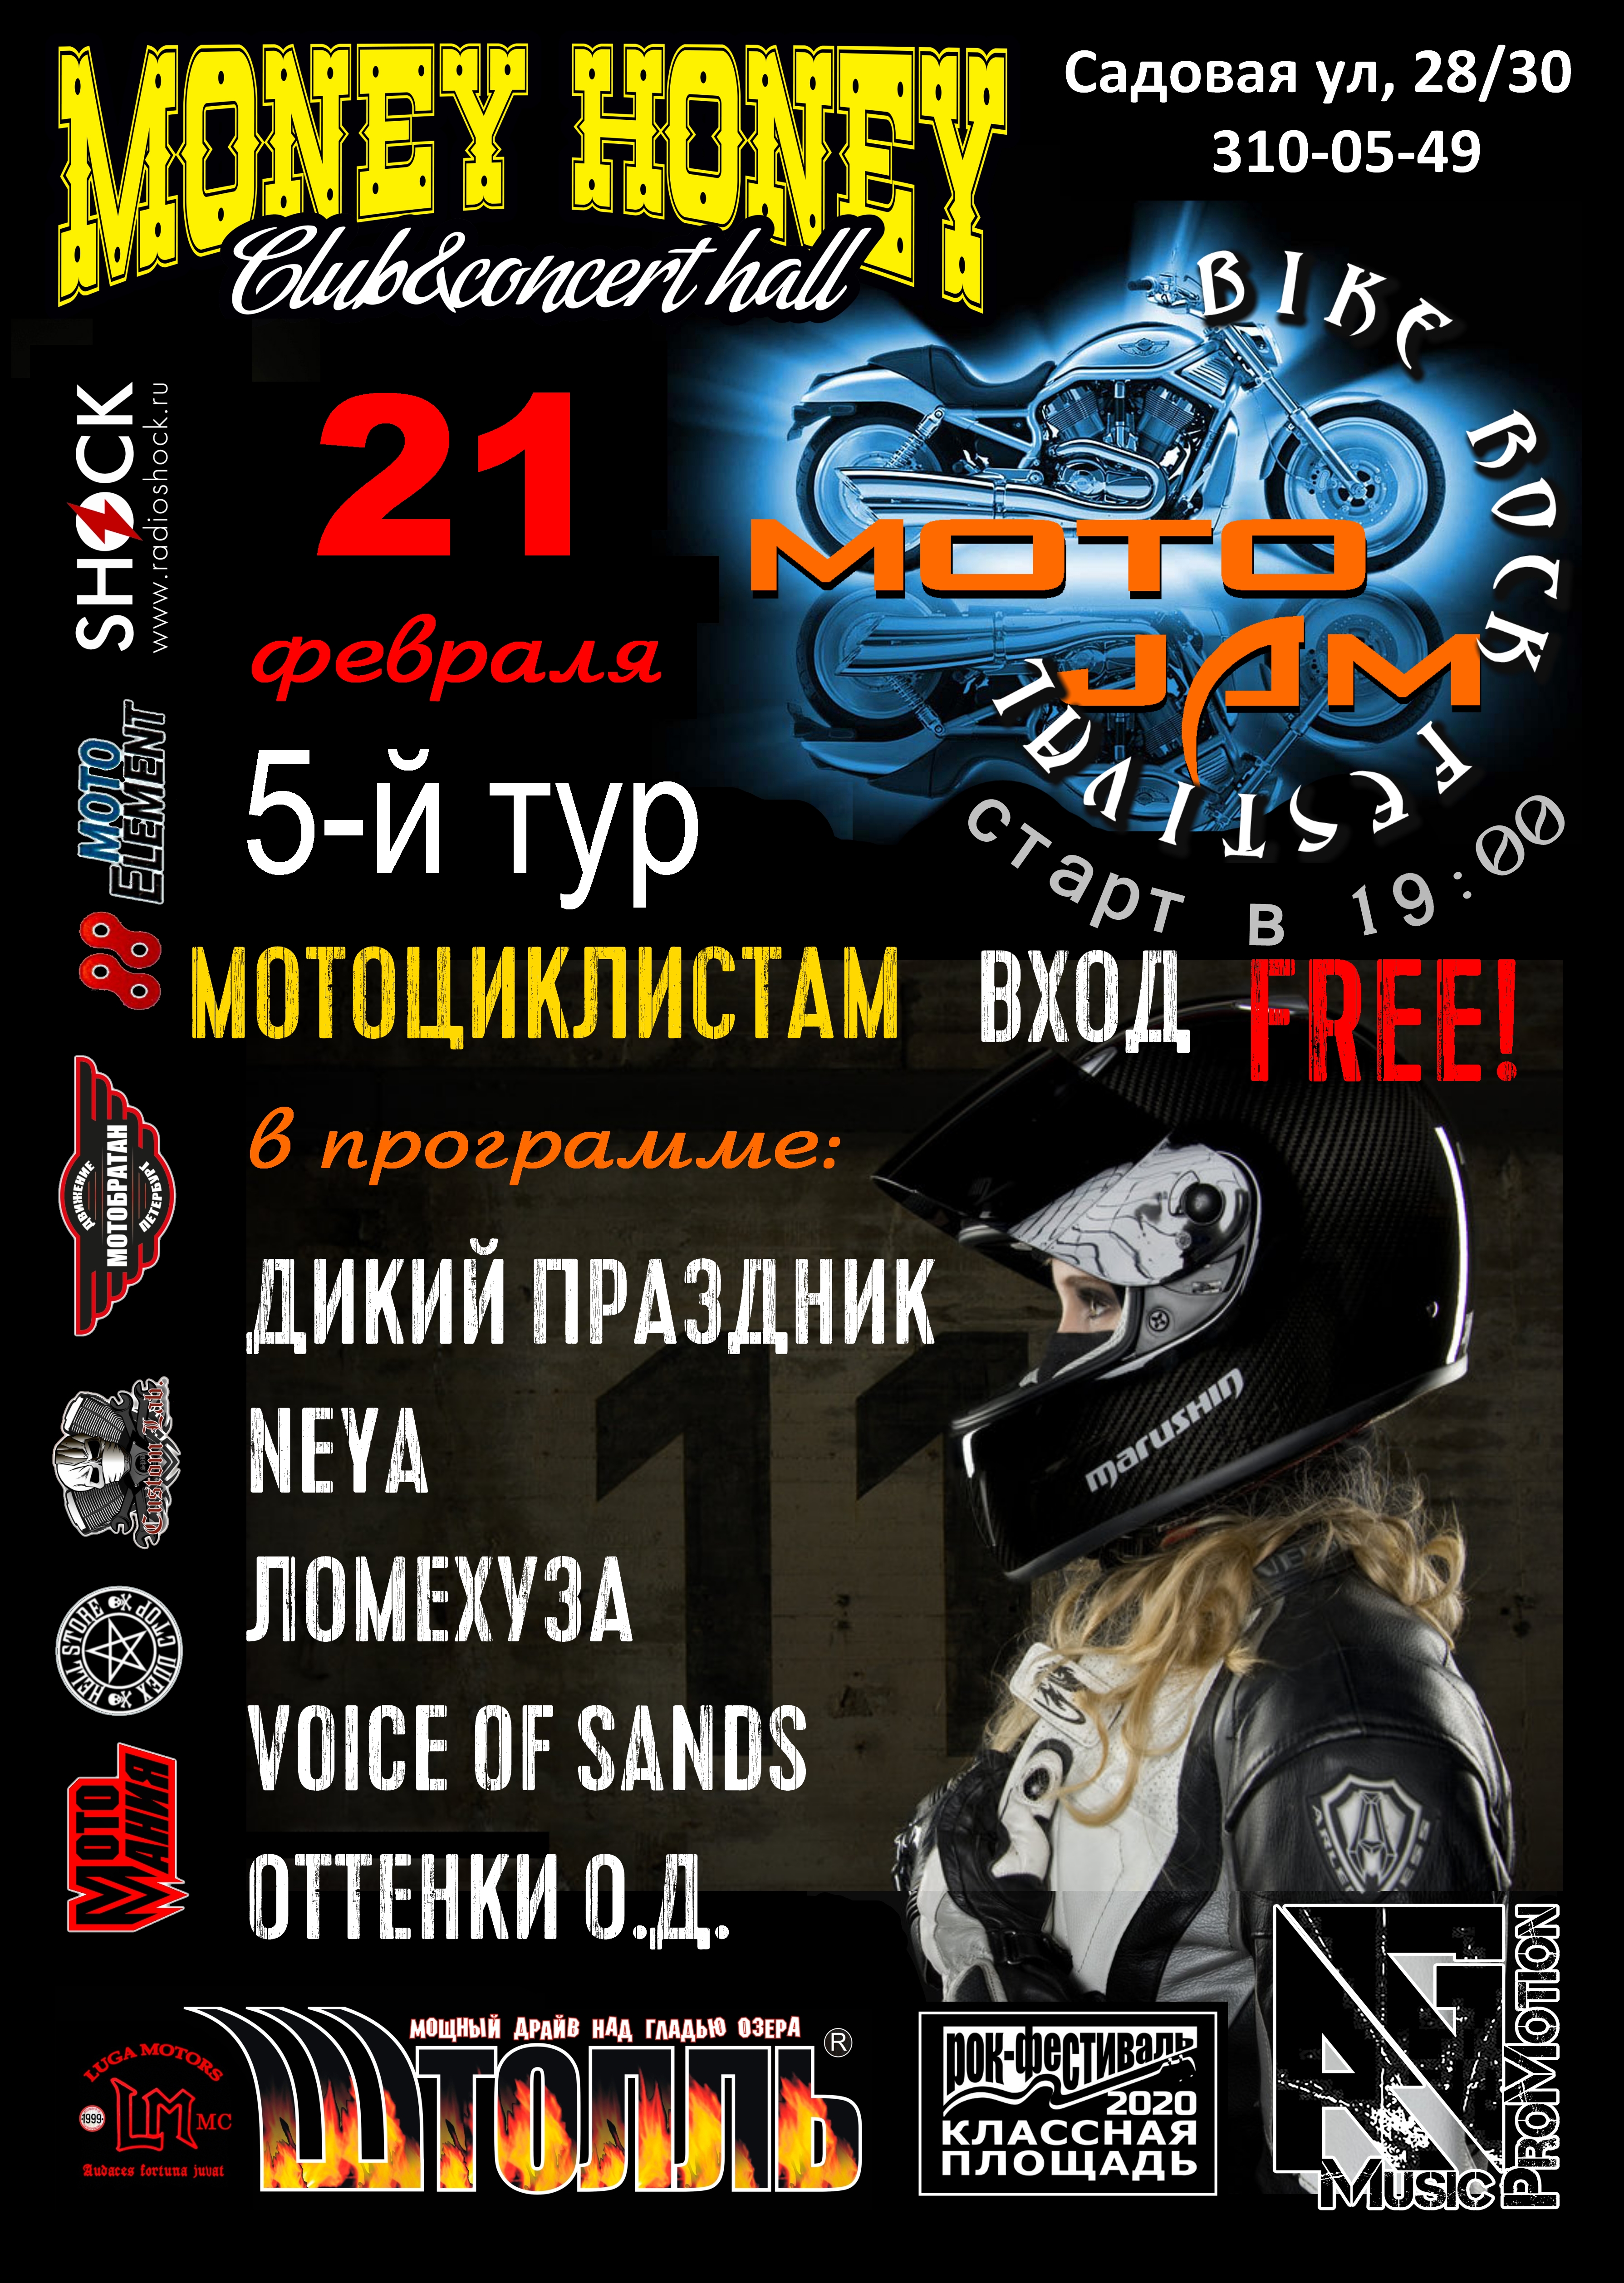 MotoJAM 5й тур 21 февраля 2020, концерт в Money Honey, Санкт-Петербург